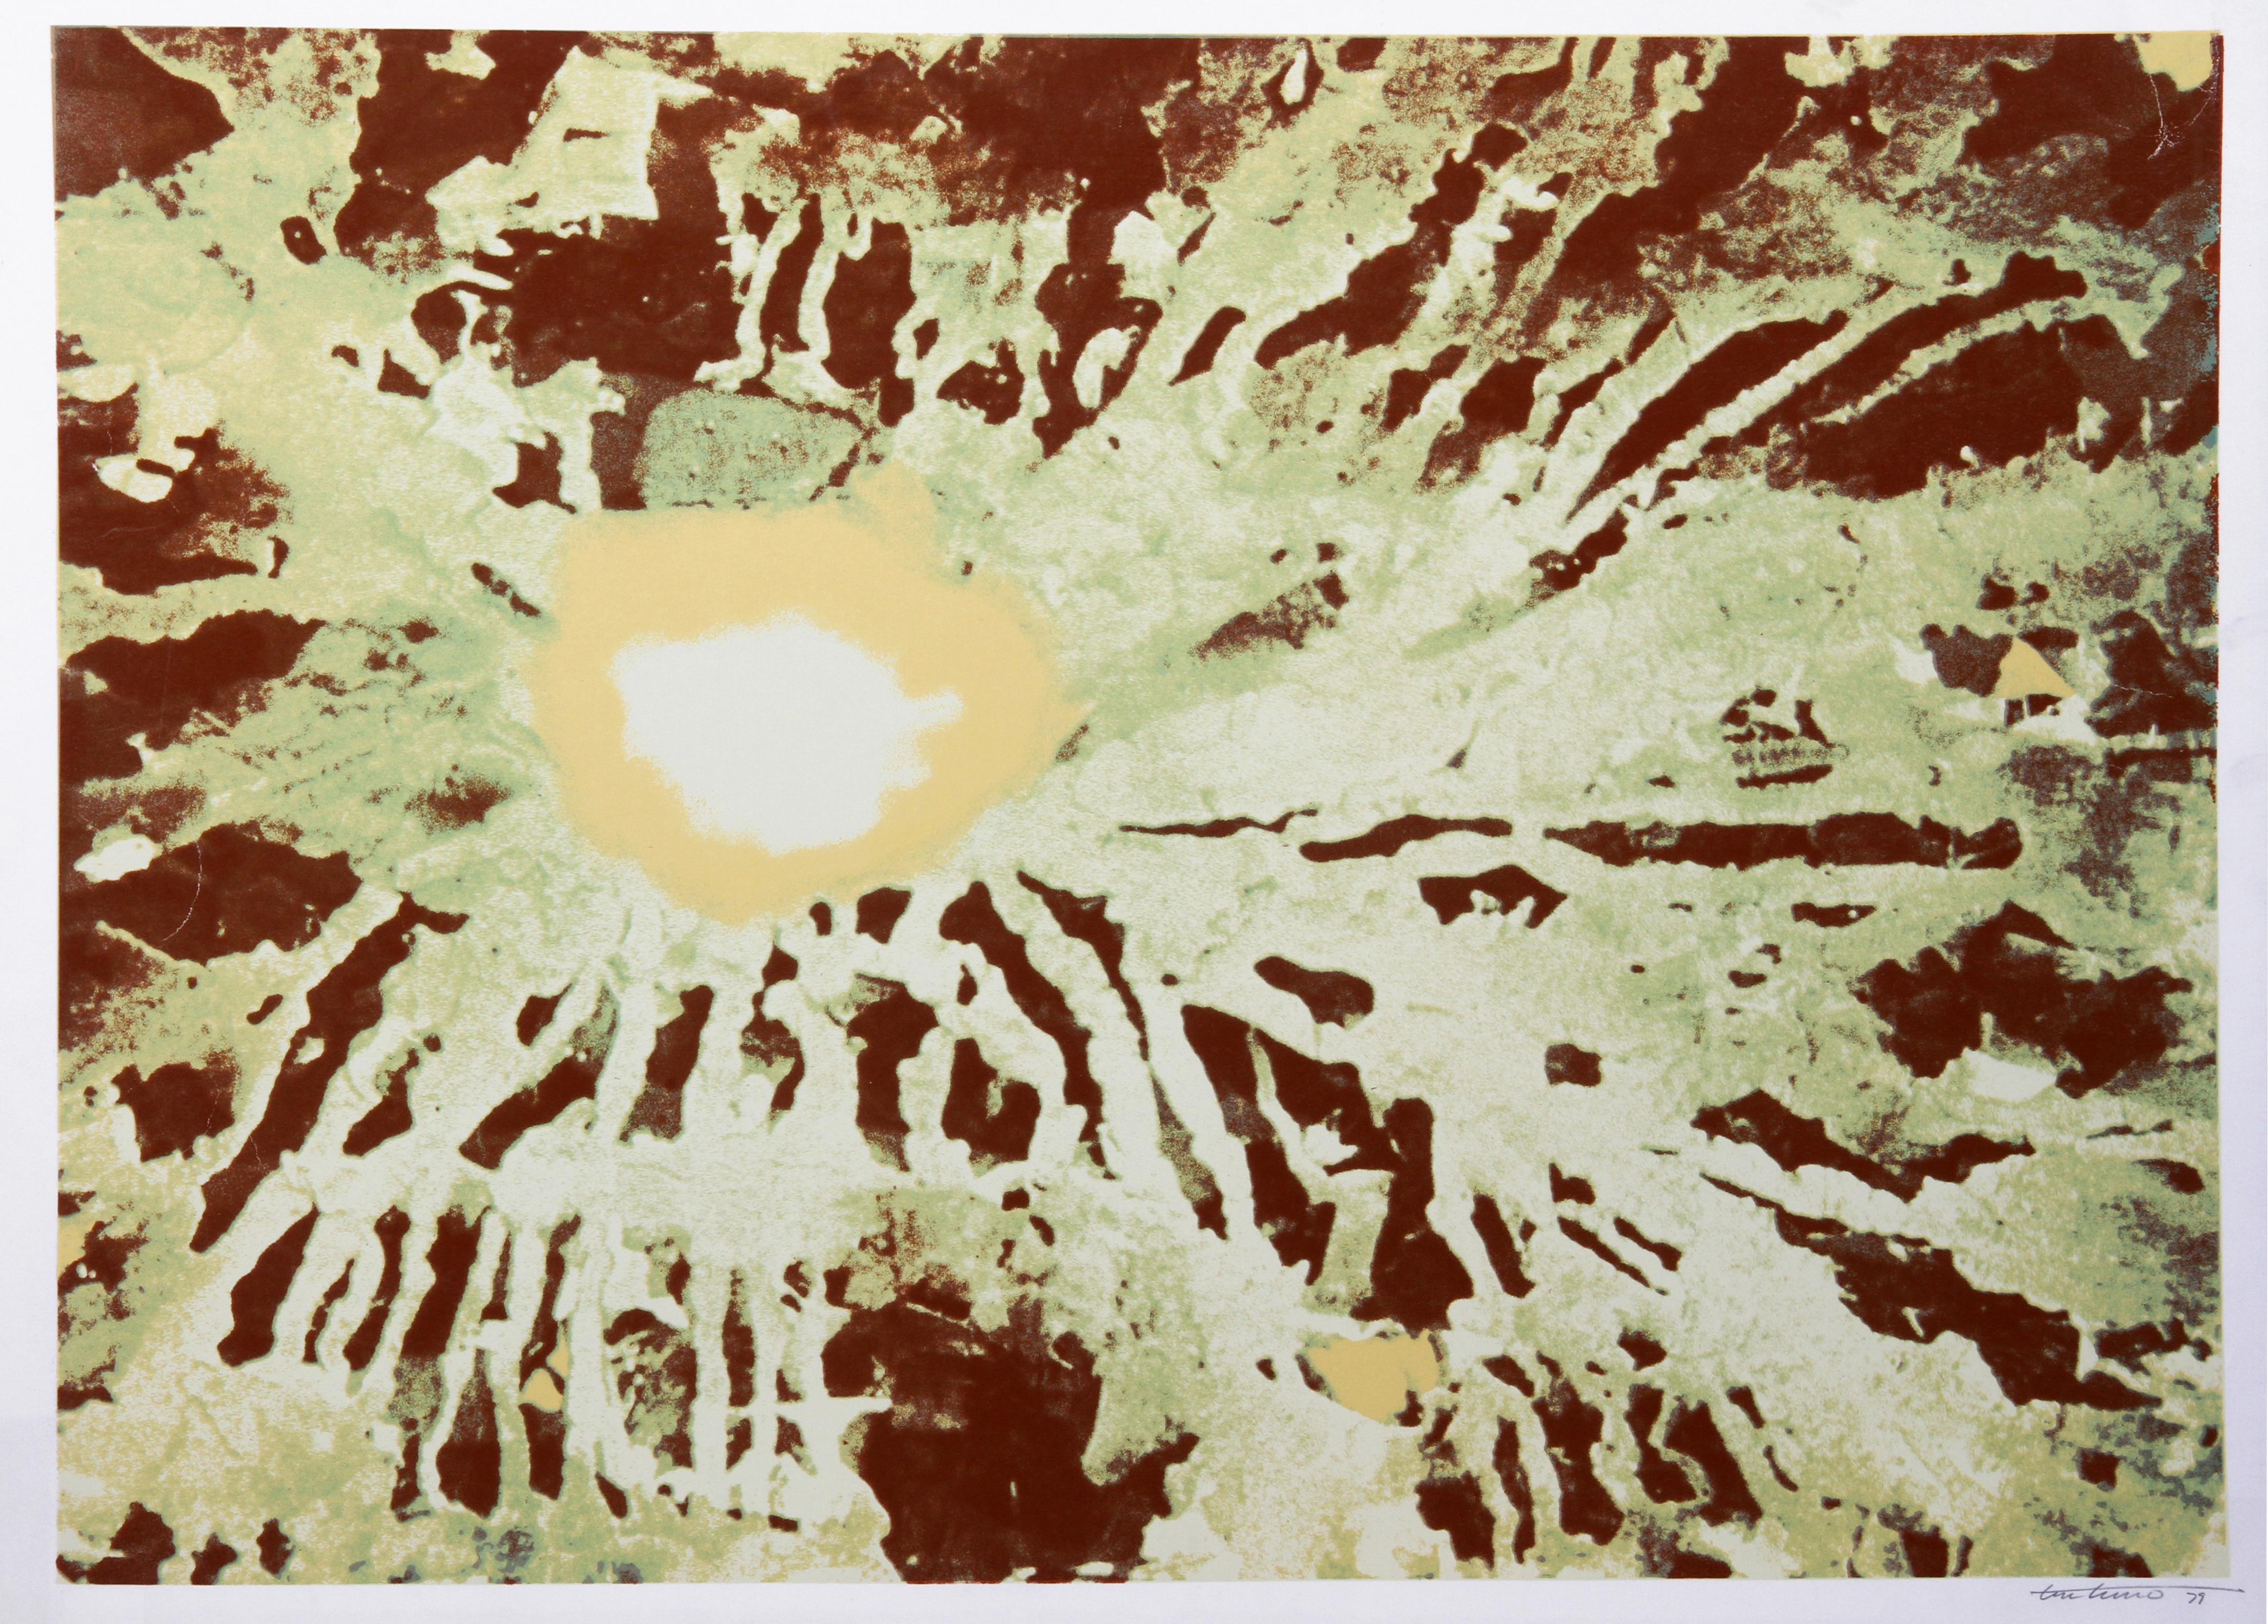 Unter der Oberfläche von Venedig
Domenick Turturro, Amerikaner (1936-2002)
Datum: 1980
Siebdruck, signiert und nummeriert mit Bleistift
Ausgabe von AP 30
Bildgröße: 24 x 34 Zoll
Größe: 26 Zoll x 36 Zoll (66,04 cm x 91,44 cm)